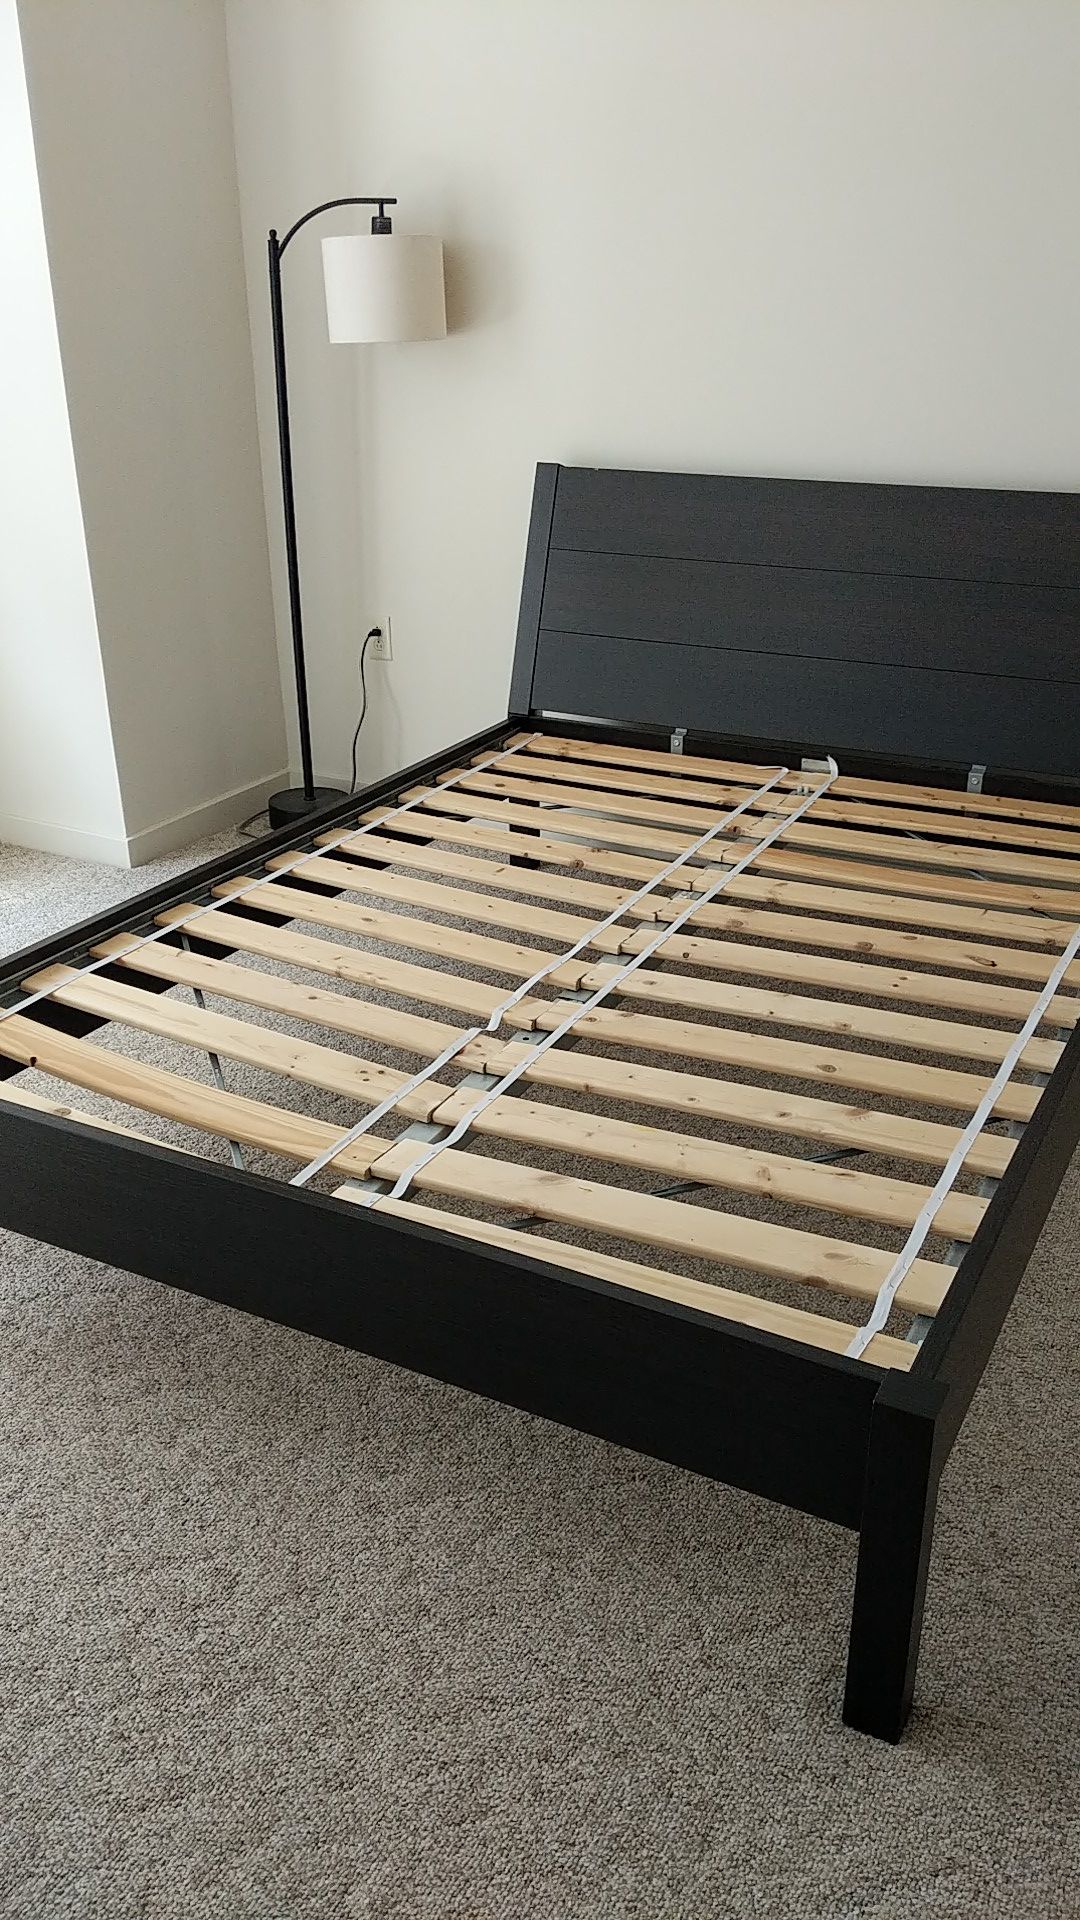 Queen bed frame - Ikea